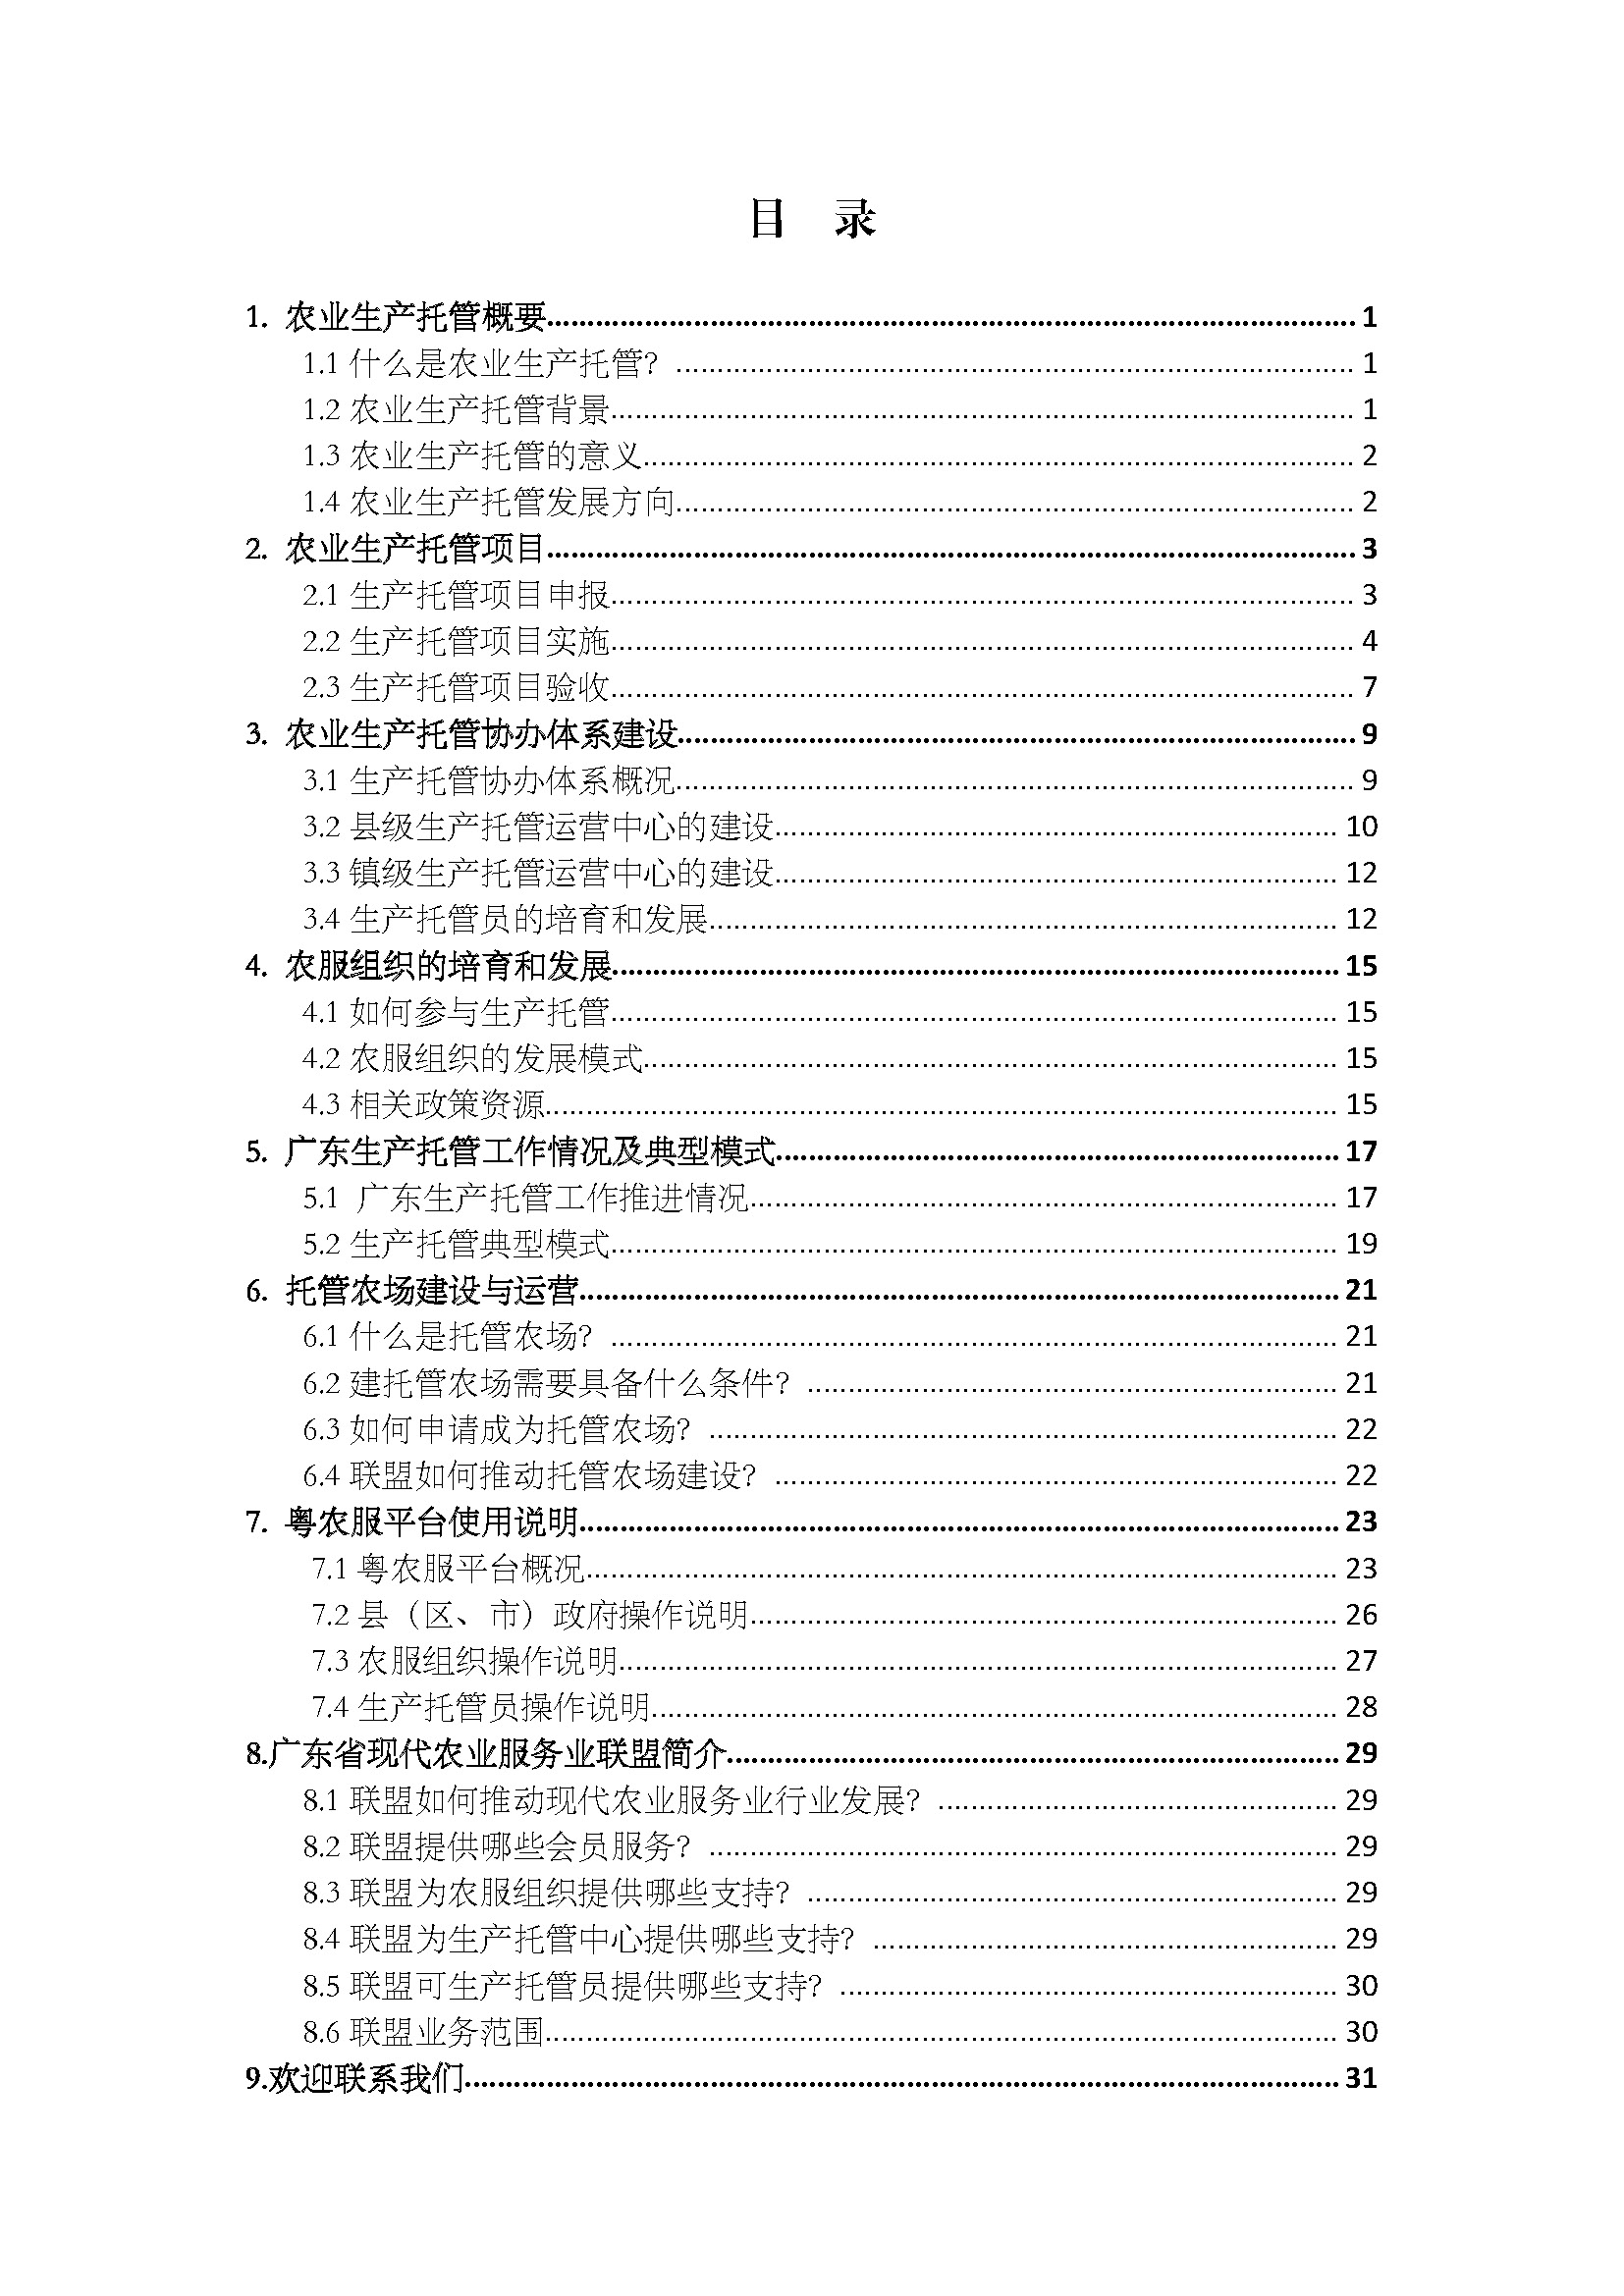 1.广东省农业生产托管服务工作手册_页面_02.jpg